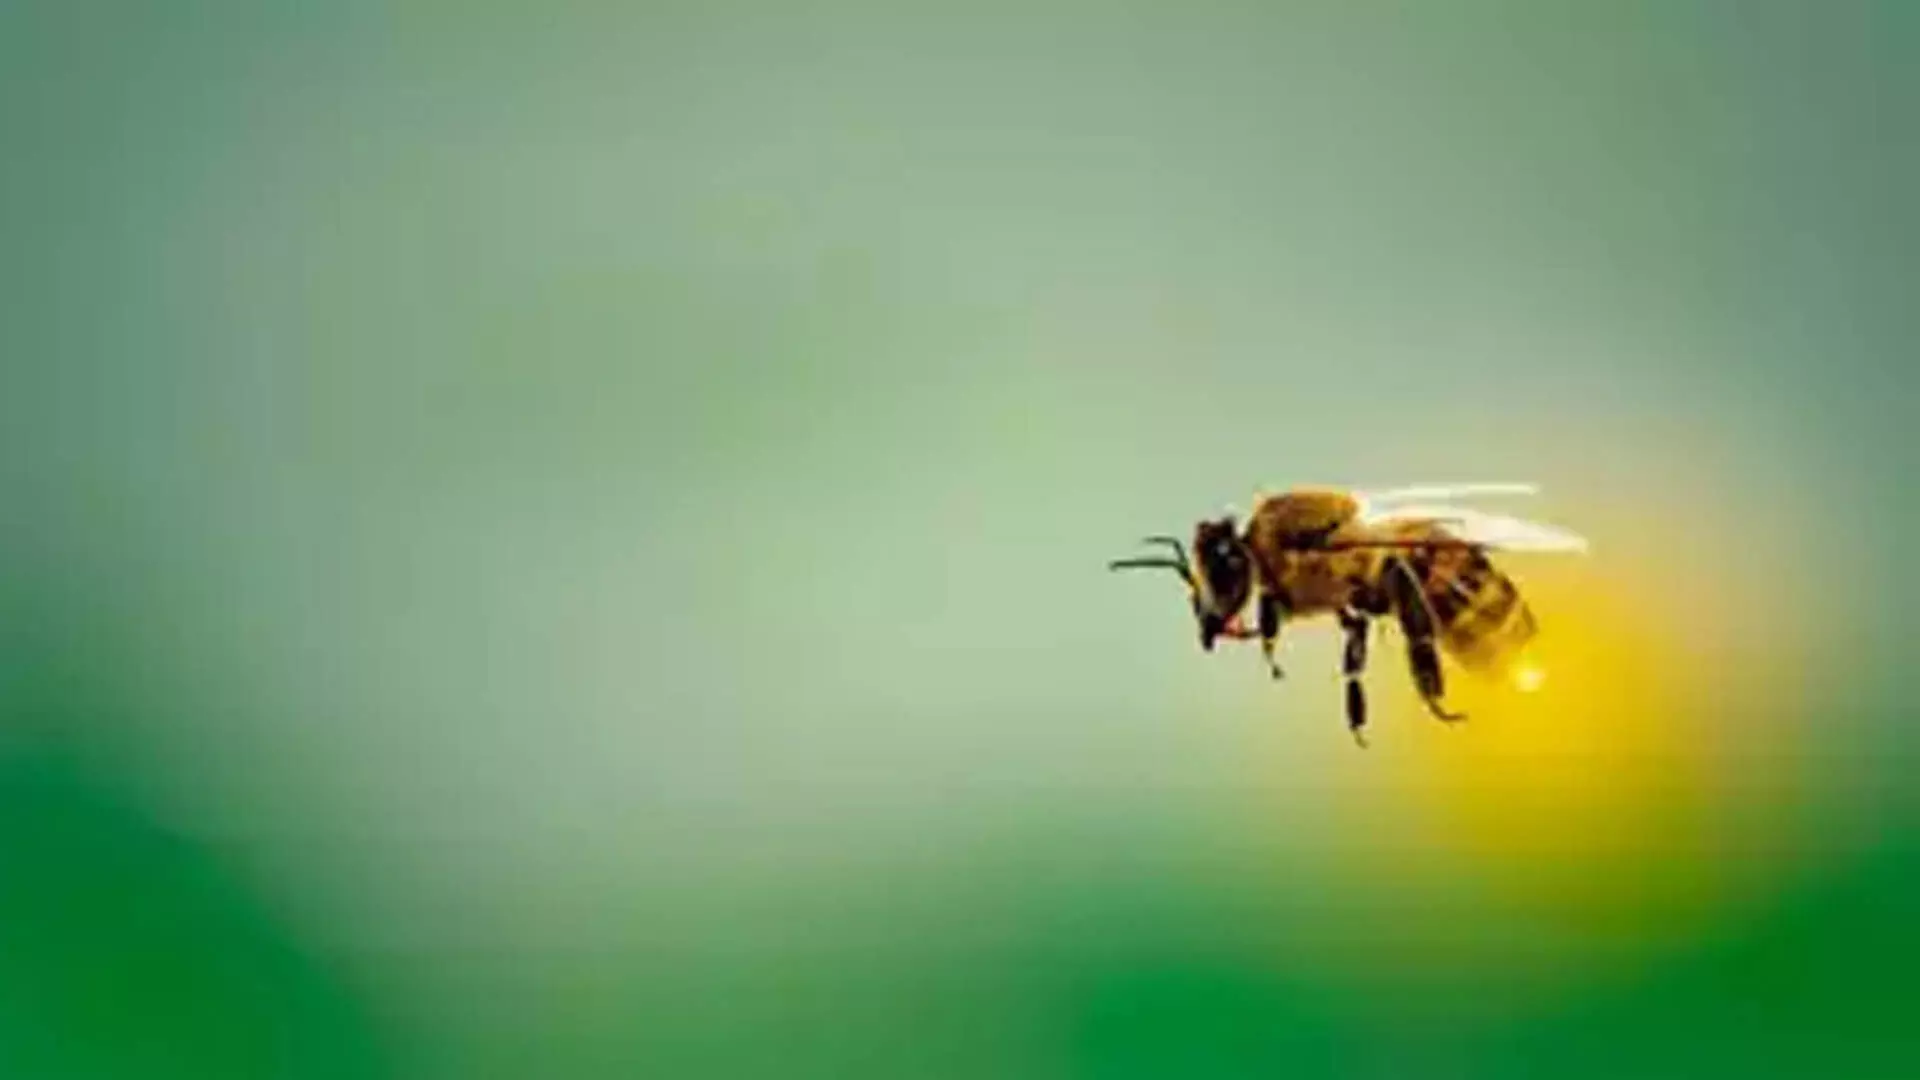 बेंगलुरू के अनोखे कीट कैफे ततैया और मधुमक्खियां, भृंग और चींटियां, शामिल